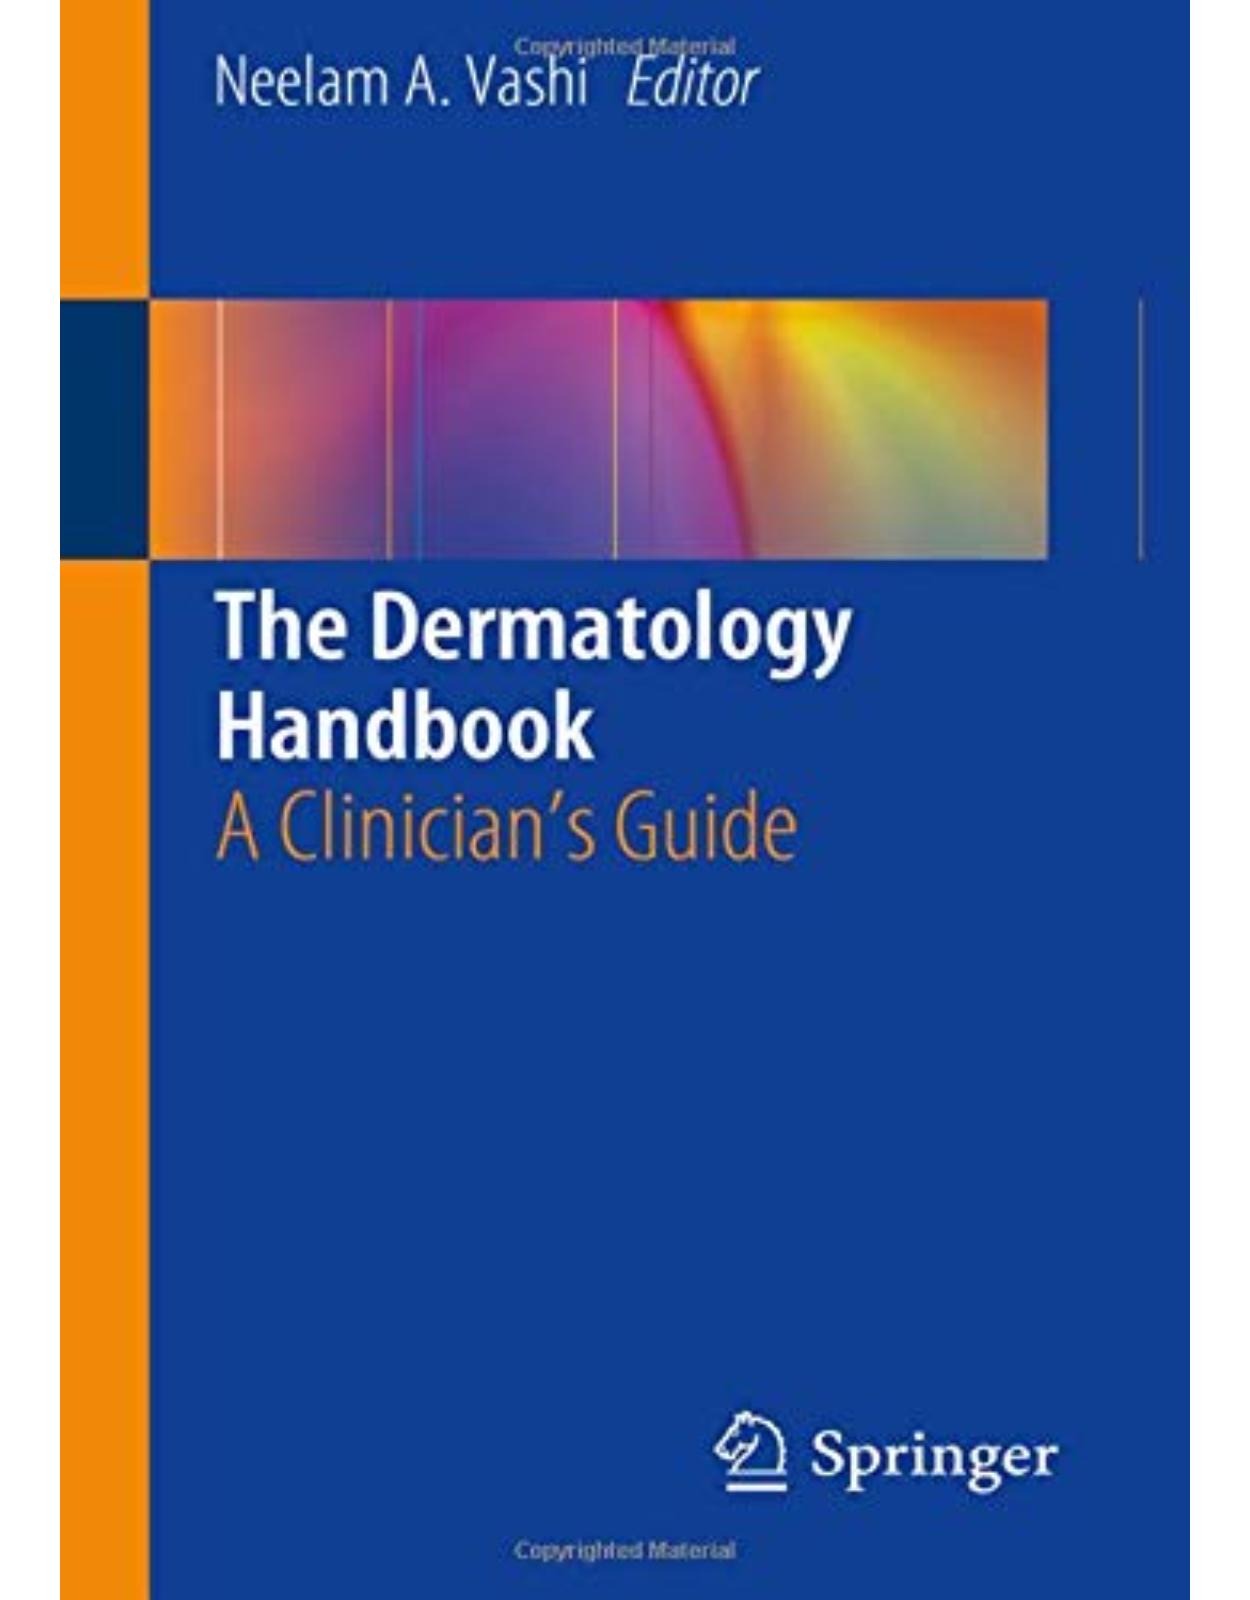 The Dermatology Handbook: A Clinician's Guide